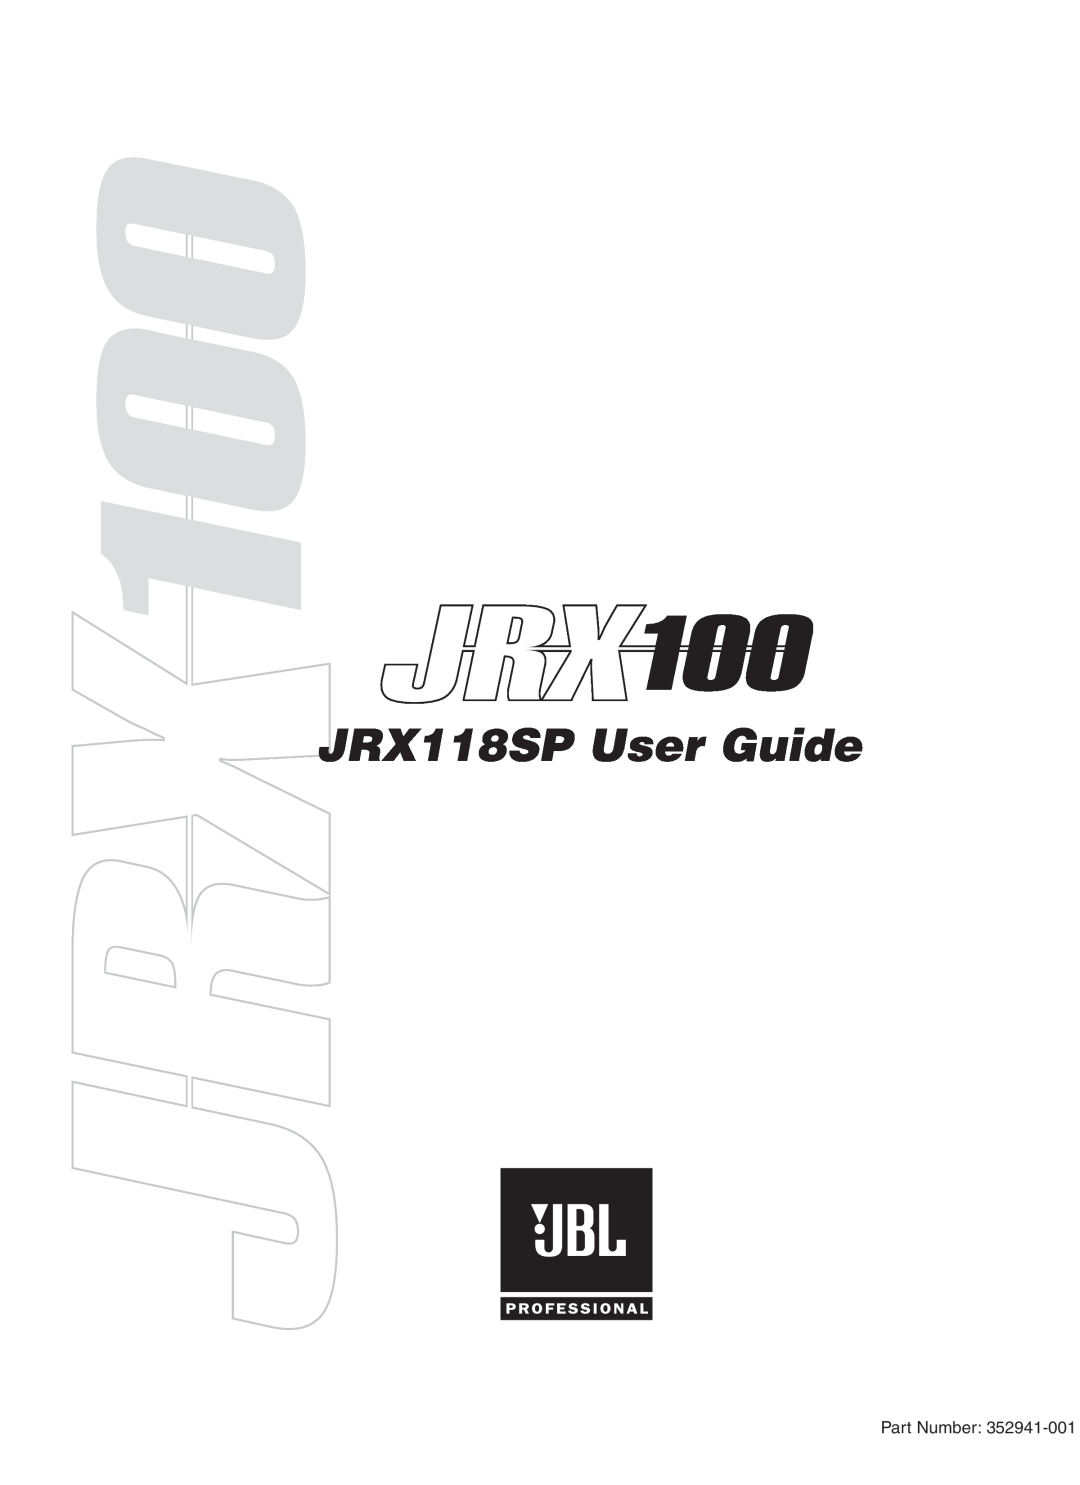 JBL manual JRX118SP User Guide, Part Number 